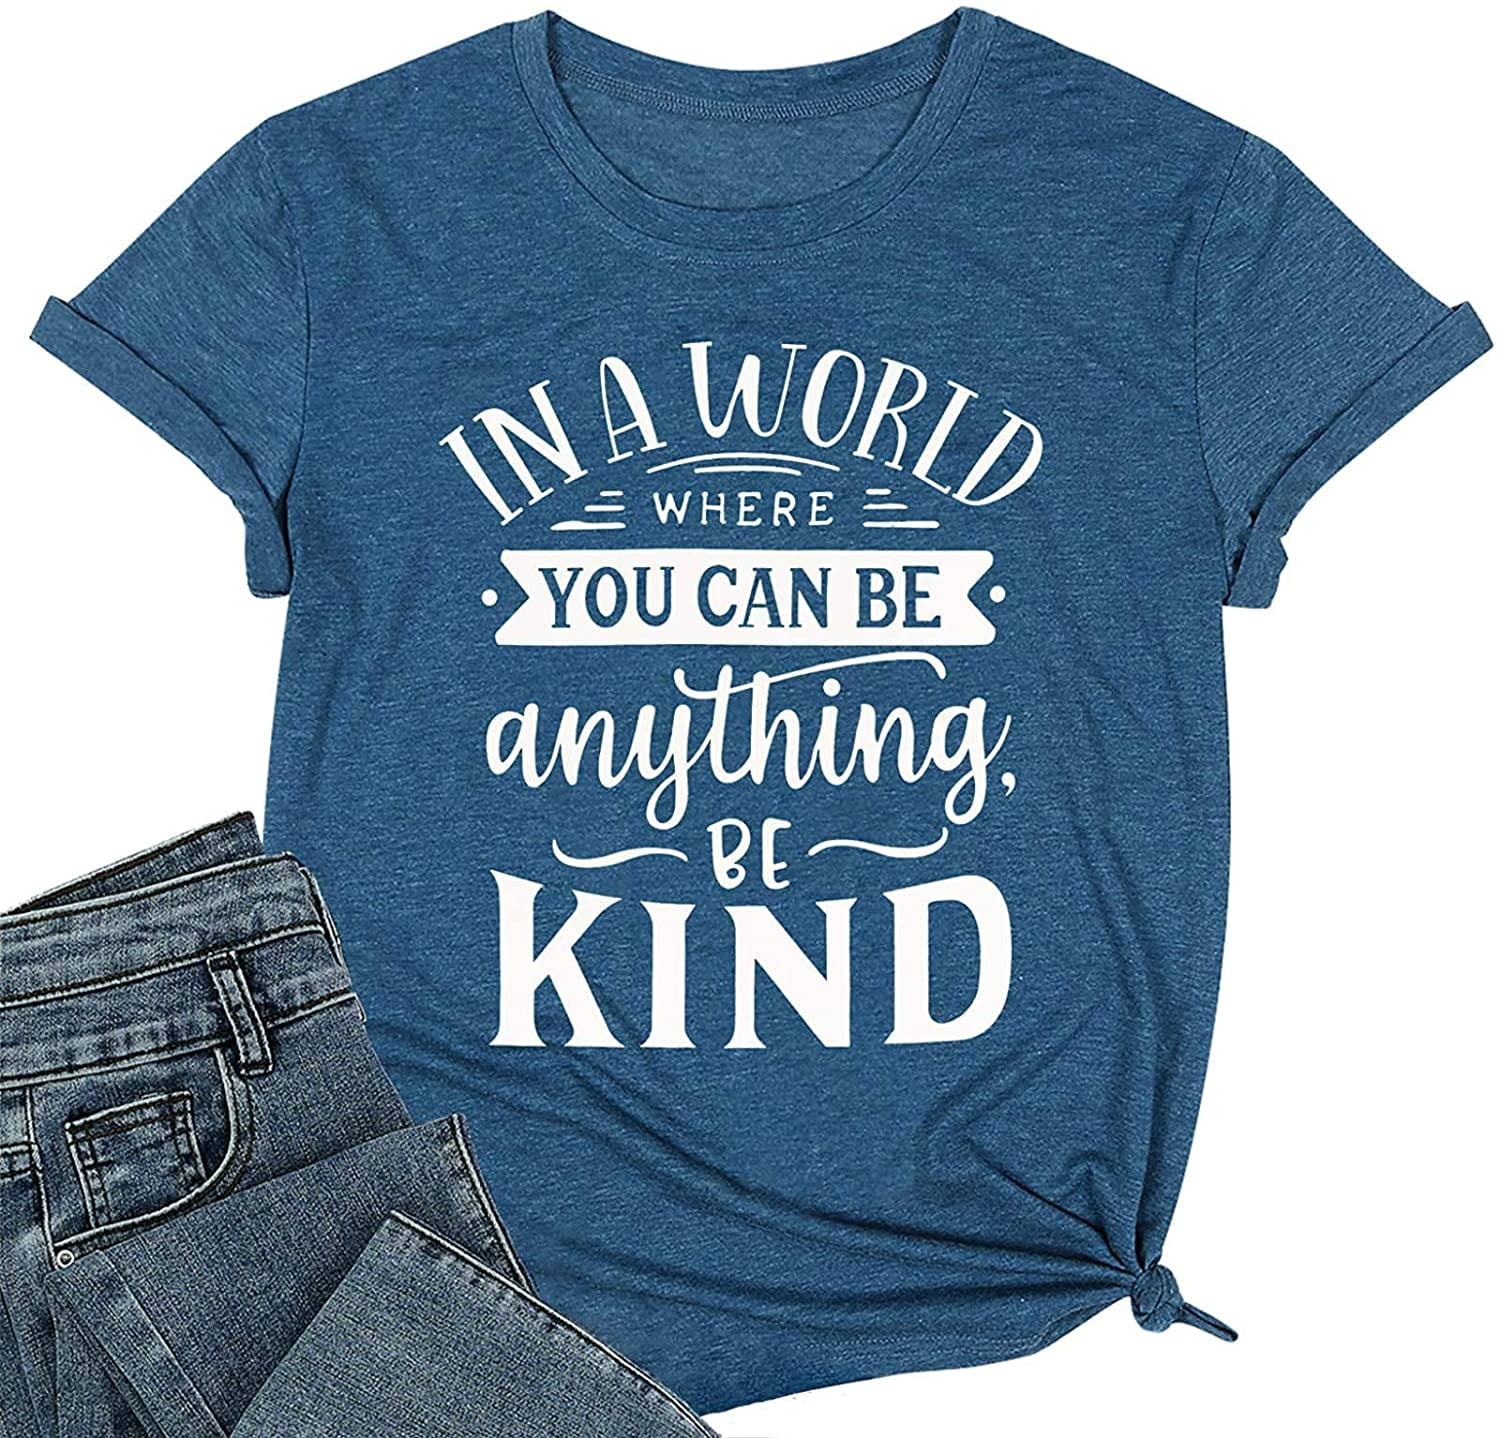 Women's T-Shirt Teaching Kindness Teacher Shirt Funny Short Sleeve Inspirational Graphic Tee Top